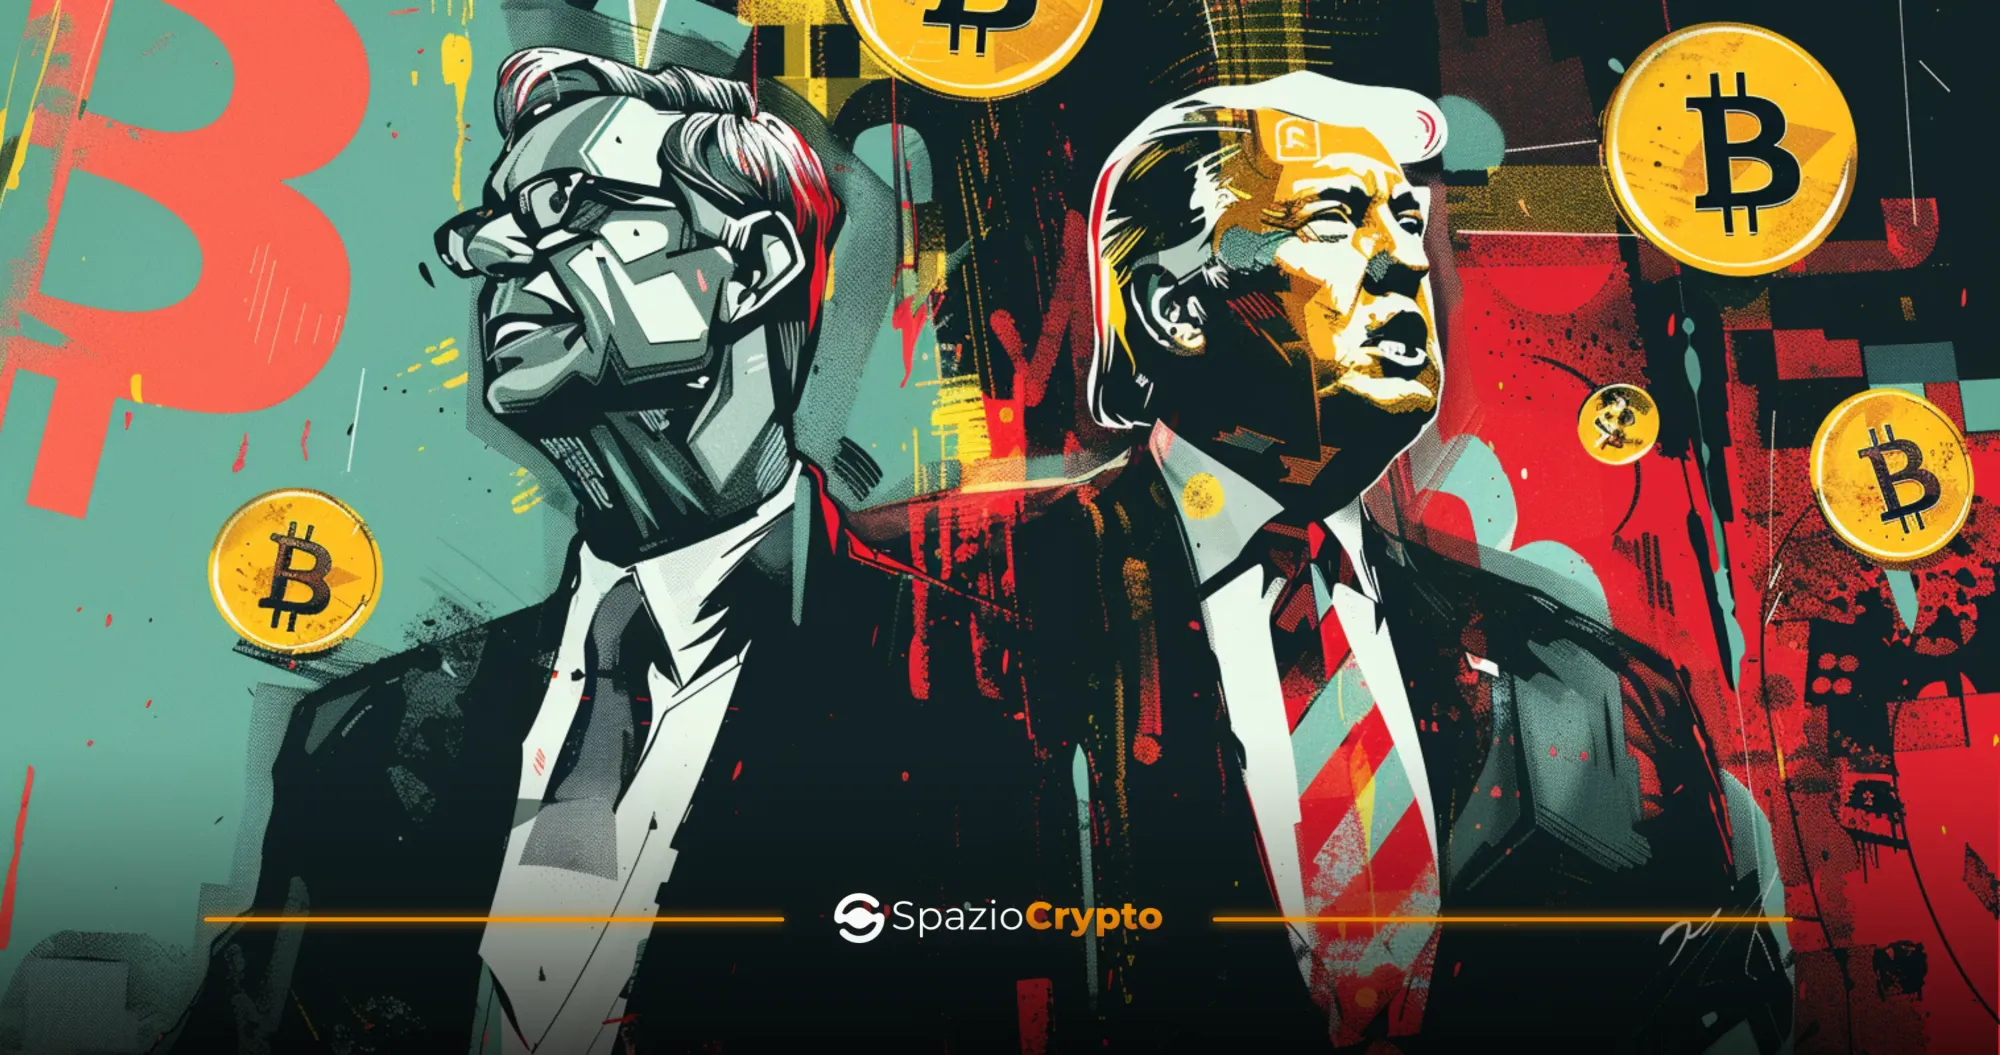 Donald Trump y las criptomonedas: el bitcoin como campo de batalla electoral - Spaziocrypto